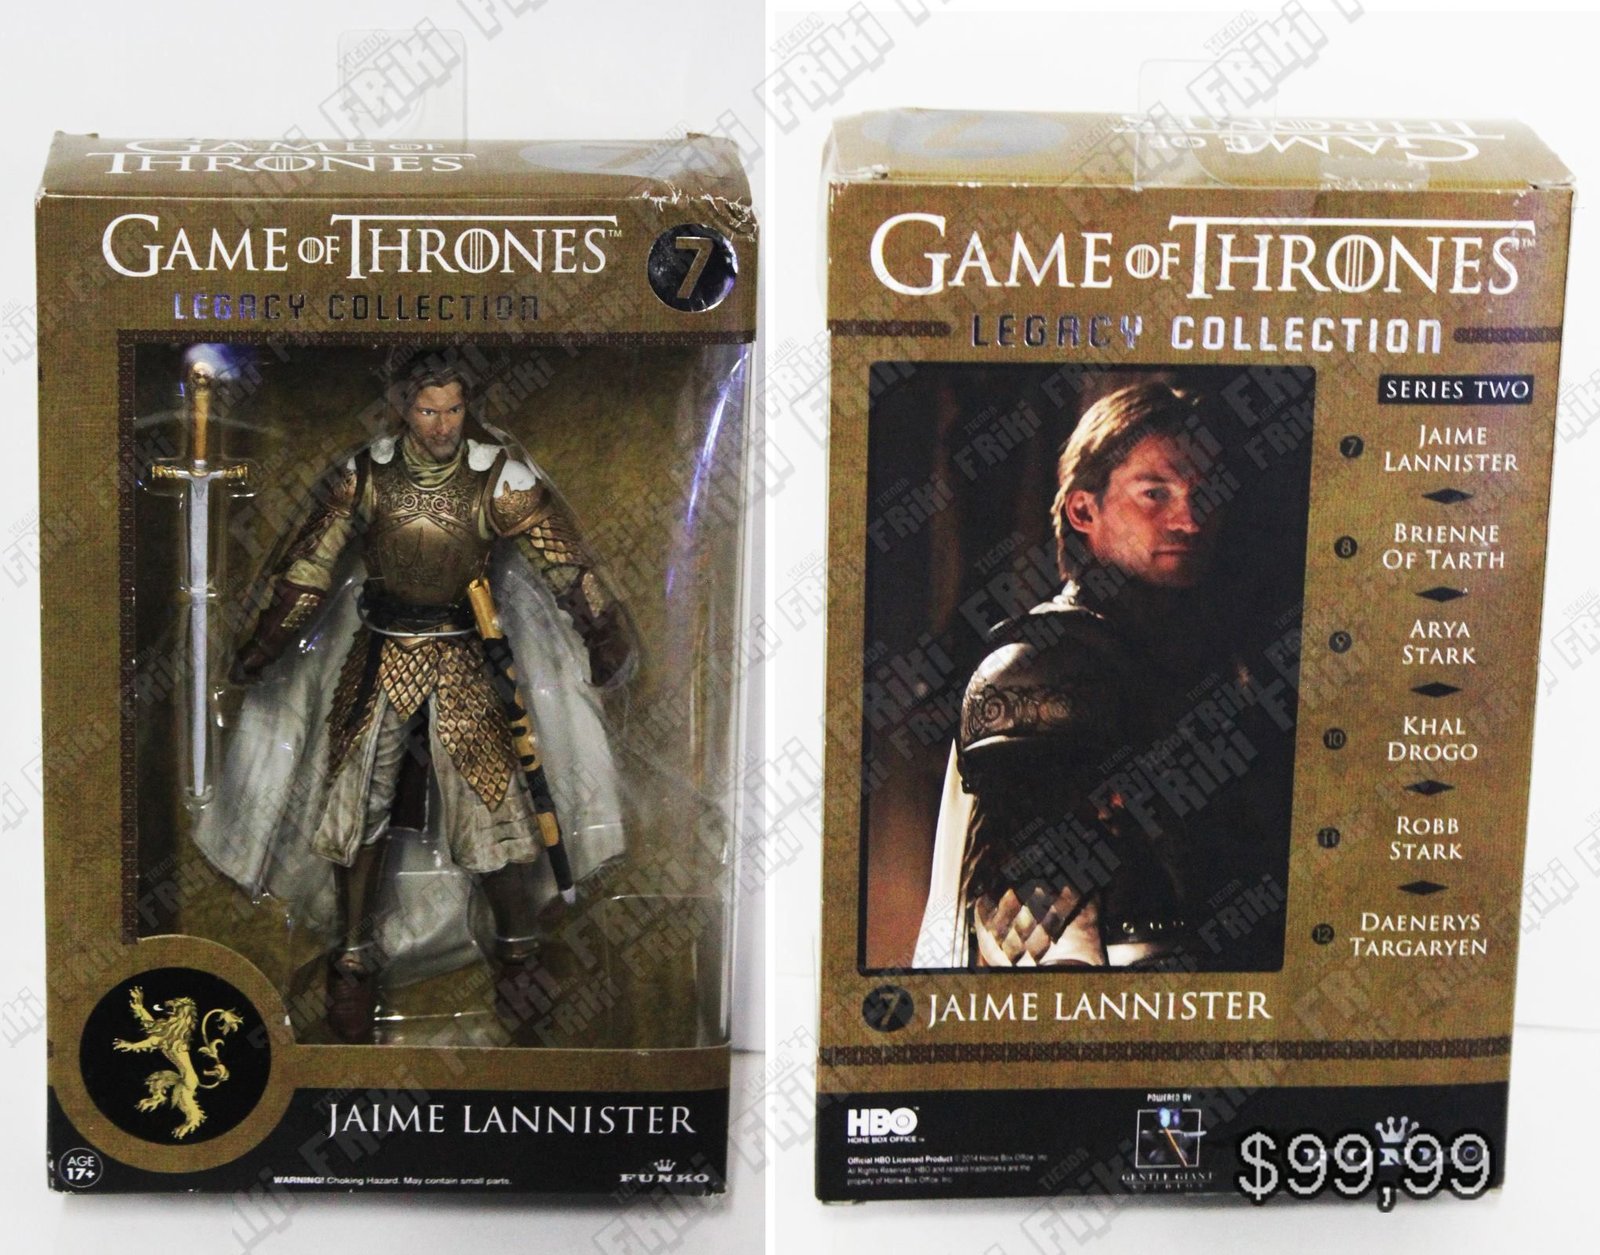 Figura Series Game of Thrones Jaime Lannister "Legacy Collection" Ecuador Comprar Venden, Bonita Apariencia perfecta para coleccionistas y fans de la serie, practica, Hermoso material de plástico Color como en la foto Estado nuevo